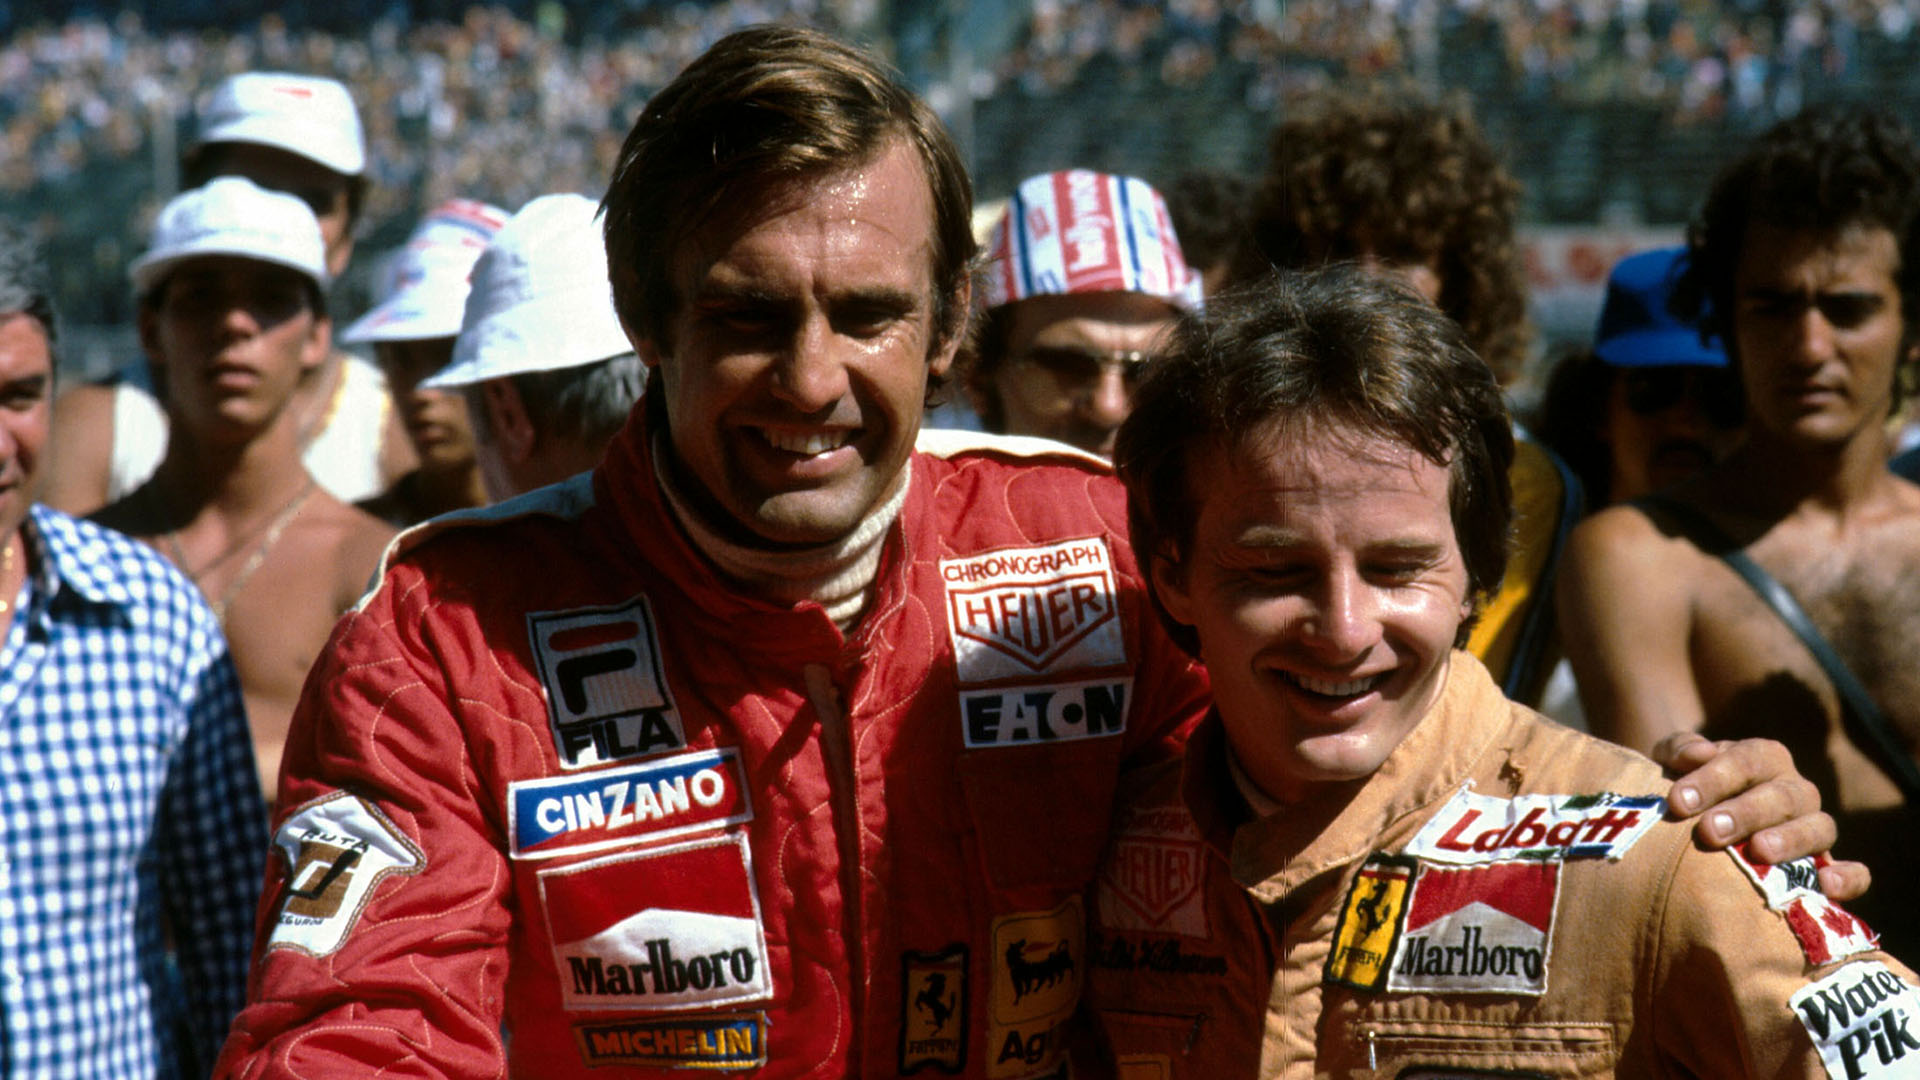 Gilles Villeneuve era su amigo. Tras su muerte le ofrecieron la Ferrari, pero Lole la rechazó casi sin contestar la llamada telefónica desde Italia (foto Alejandro de Brito)